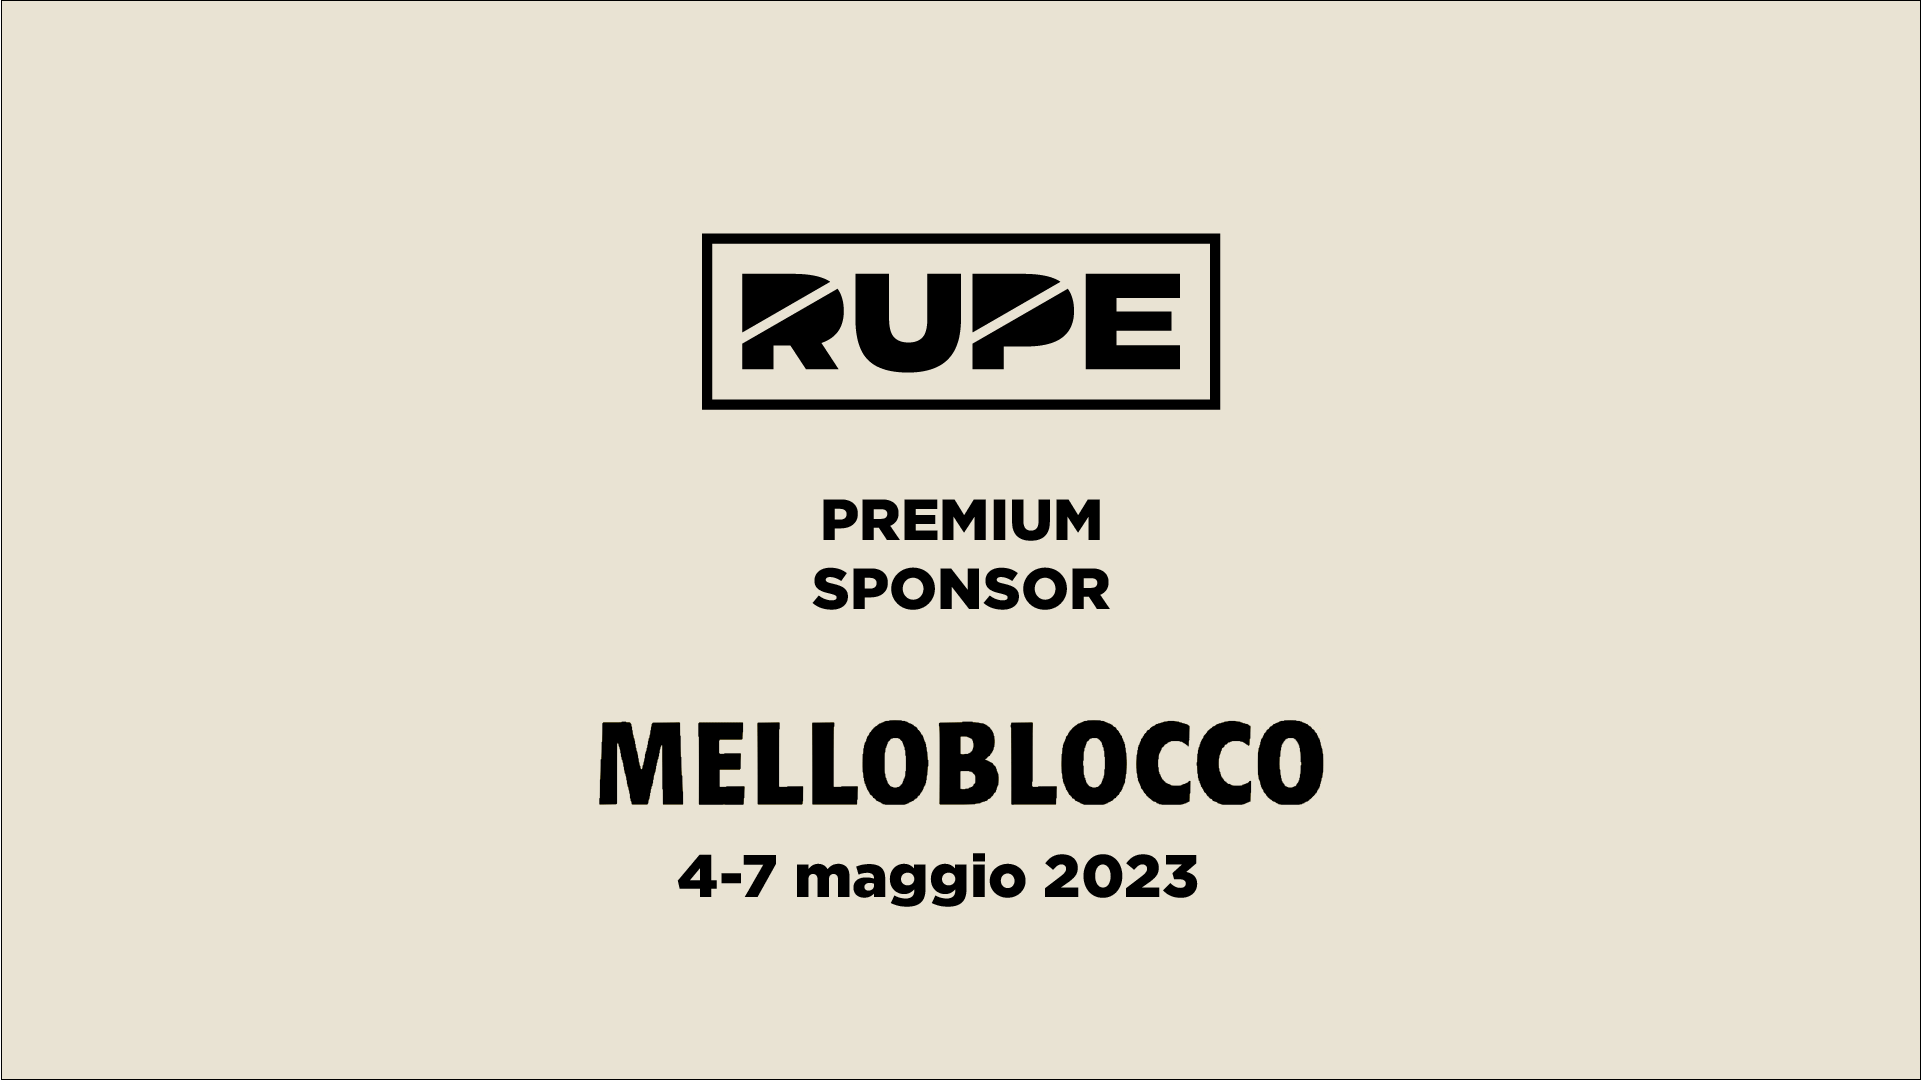 Sponsor premium Rupe Melloblocco 2023